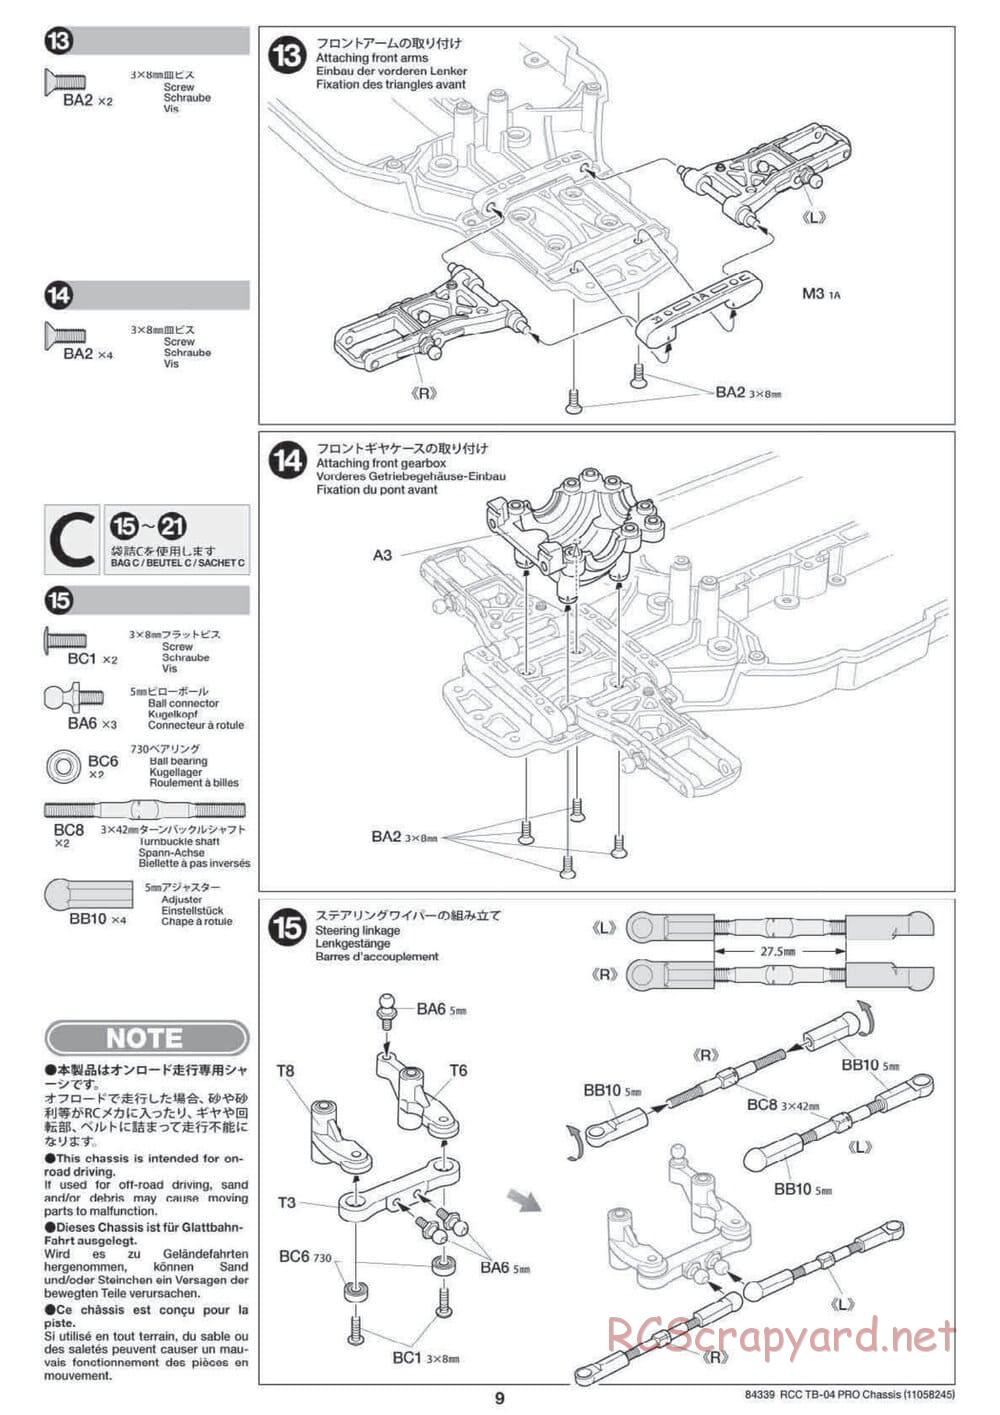 Tamiya - TB-04 Pro Chassis - Manual - Page 9